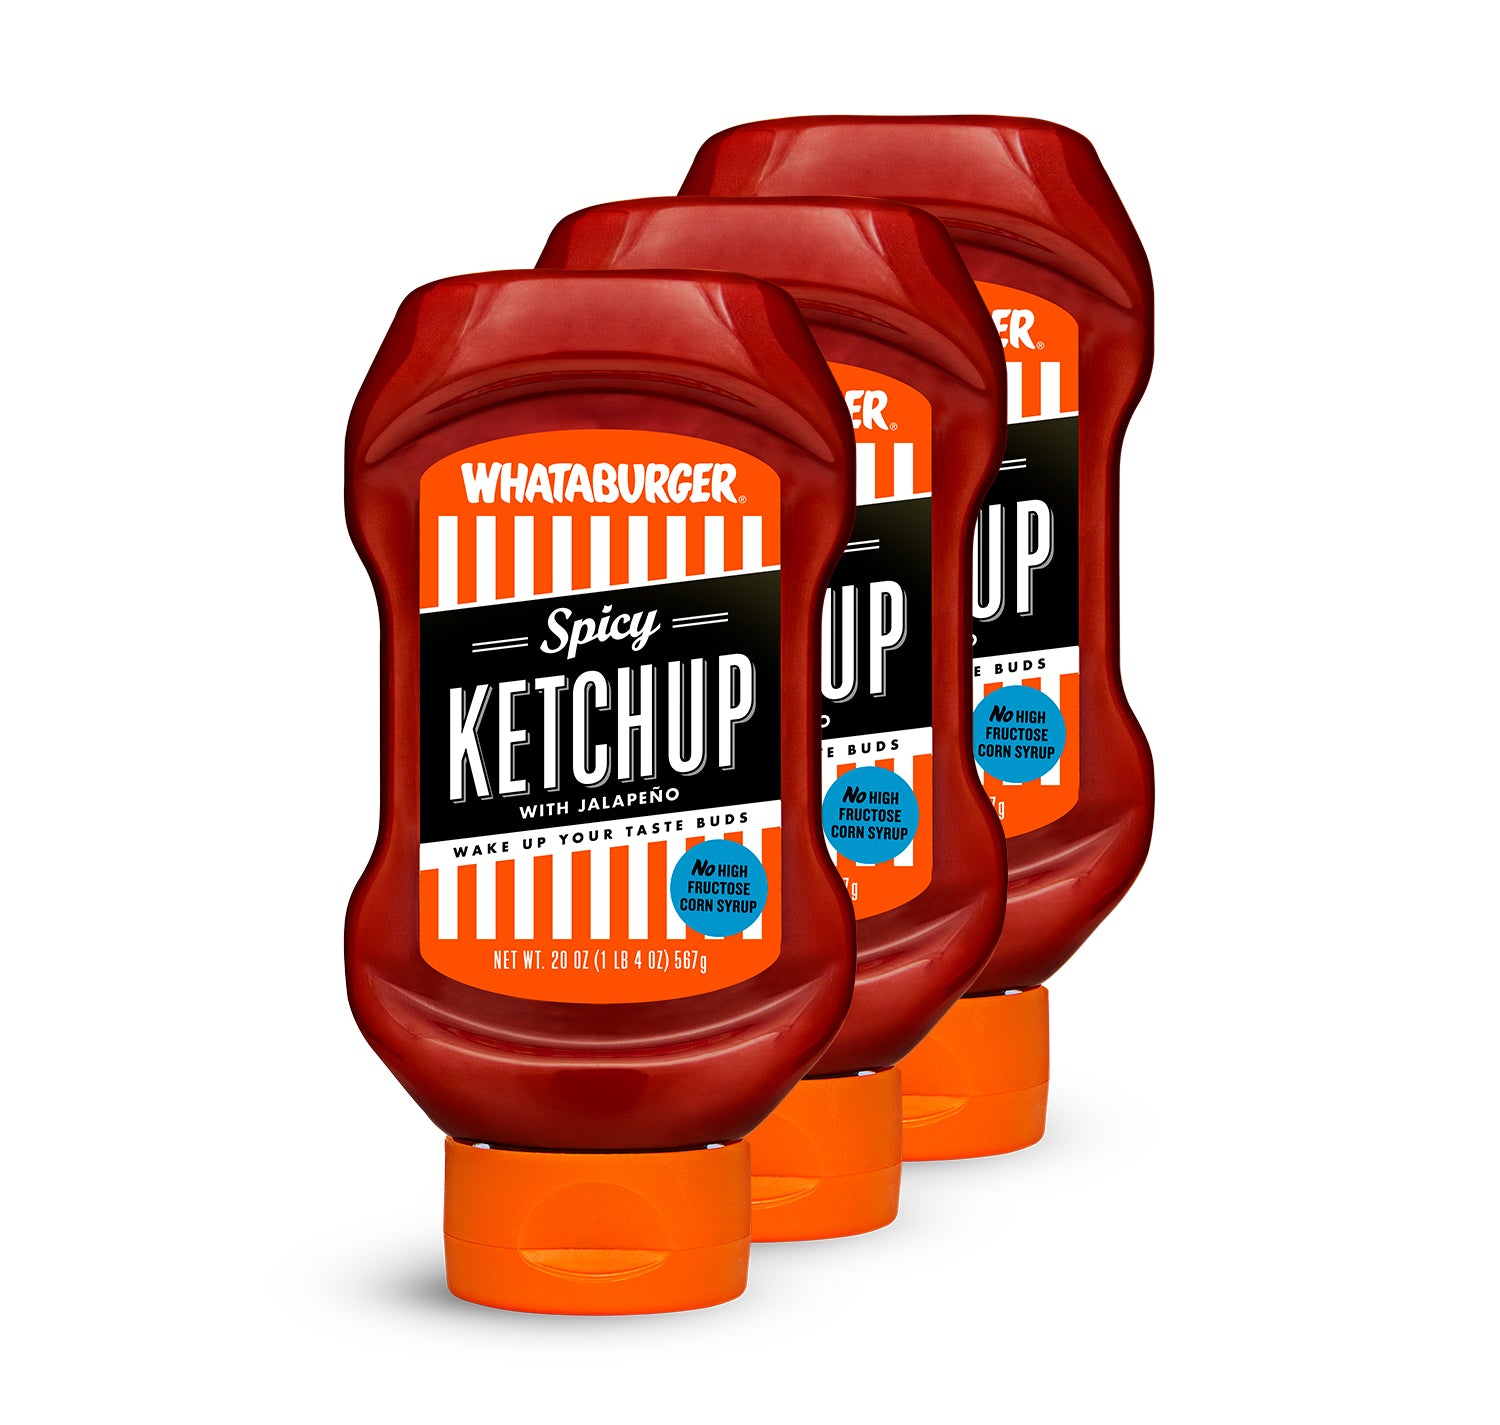 Whataburger Ketchup, Spicy - 40 oz